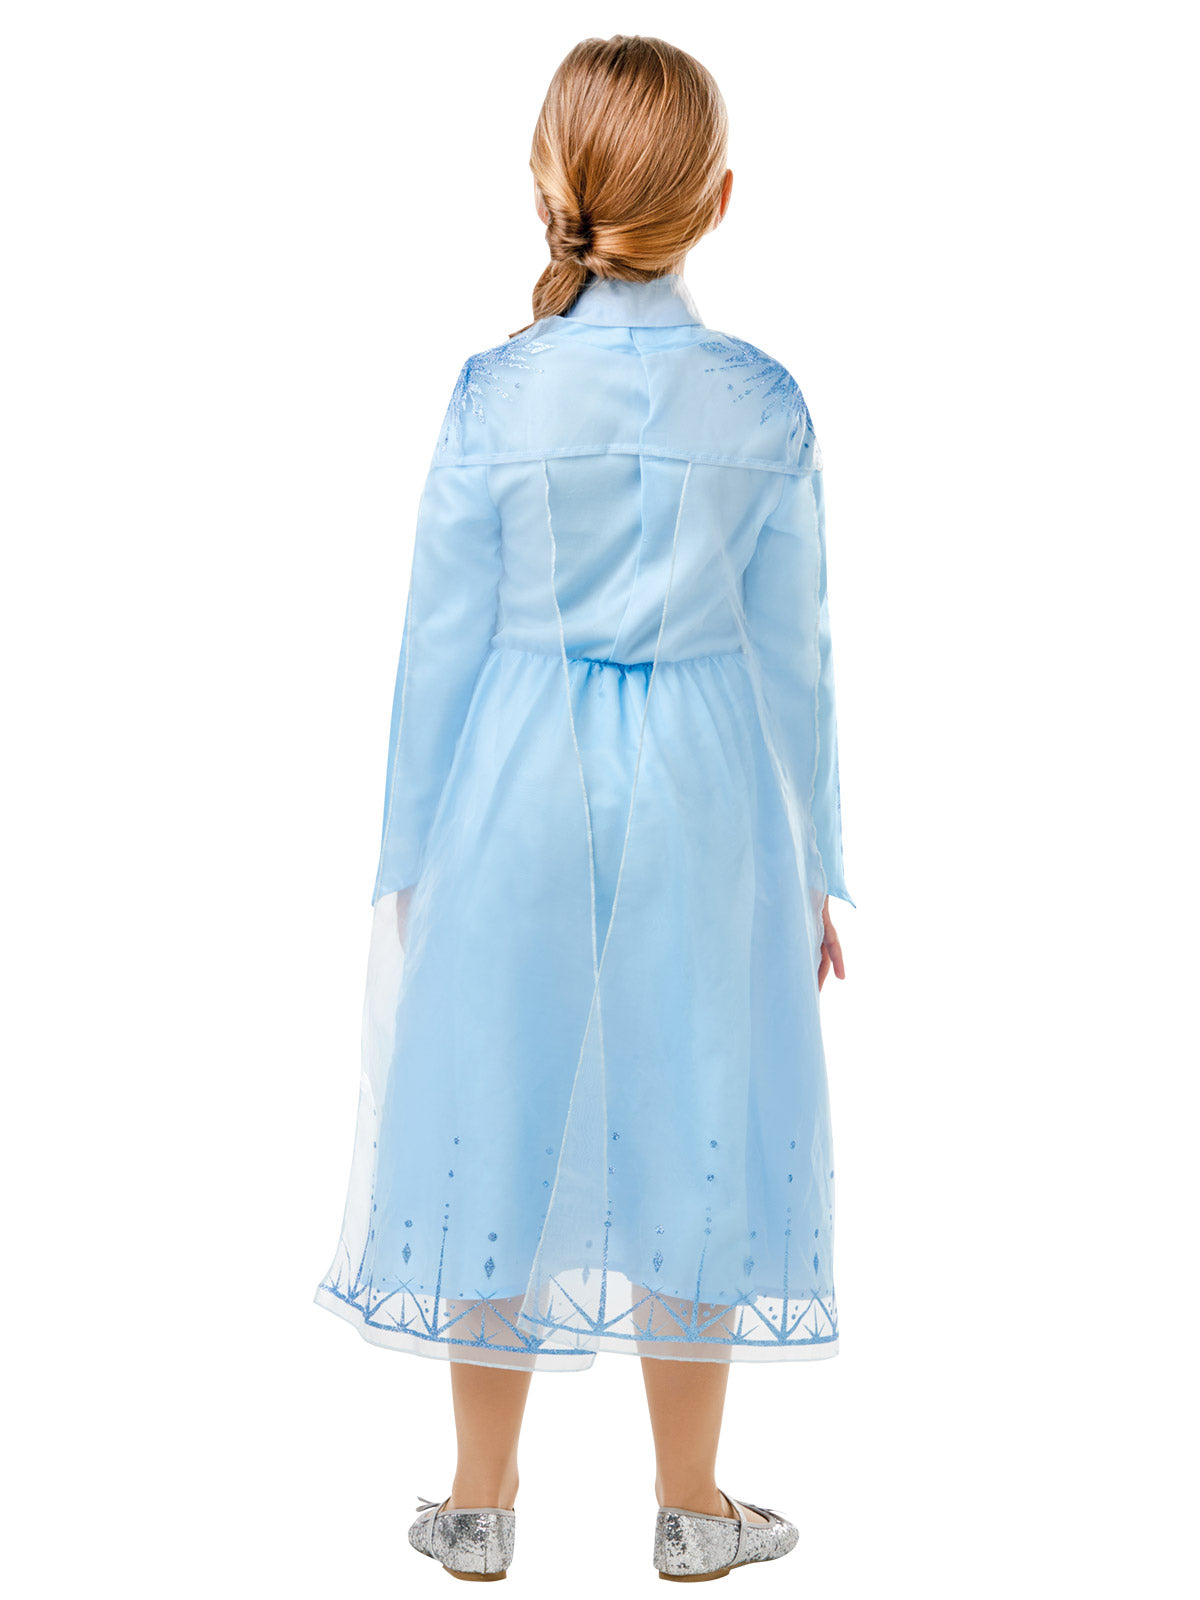 Disney Frozen 2 Elsa Classic Girls Costume